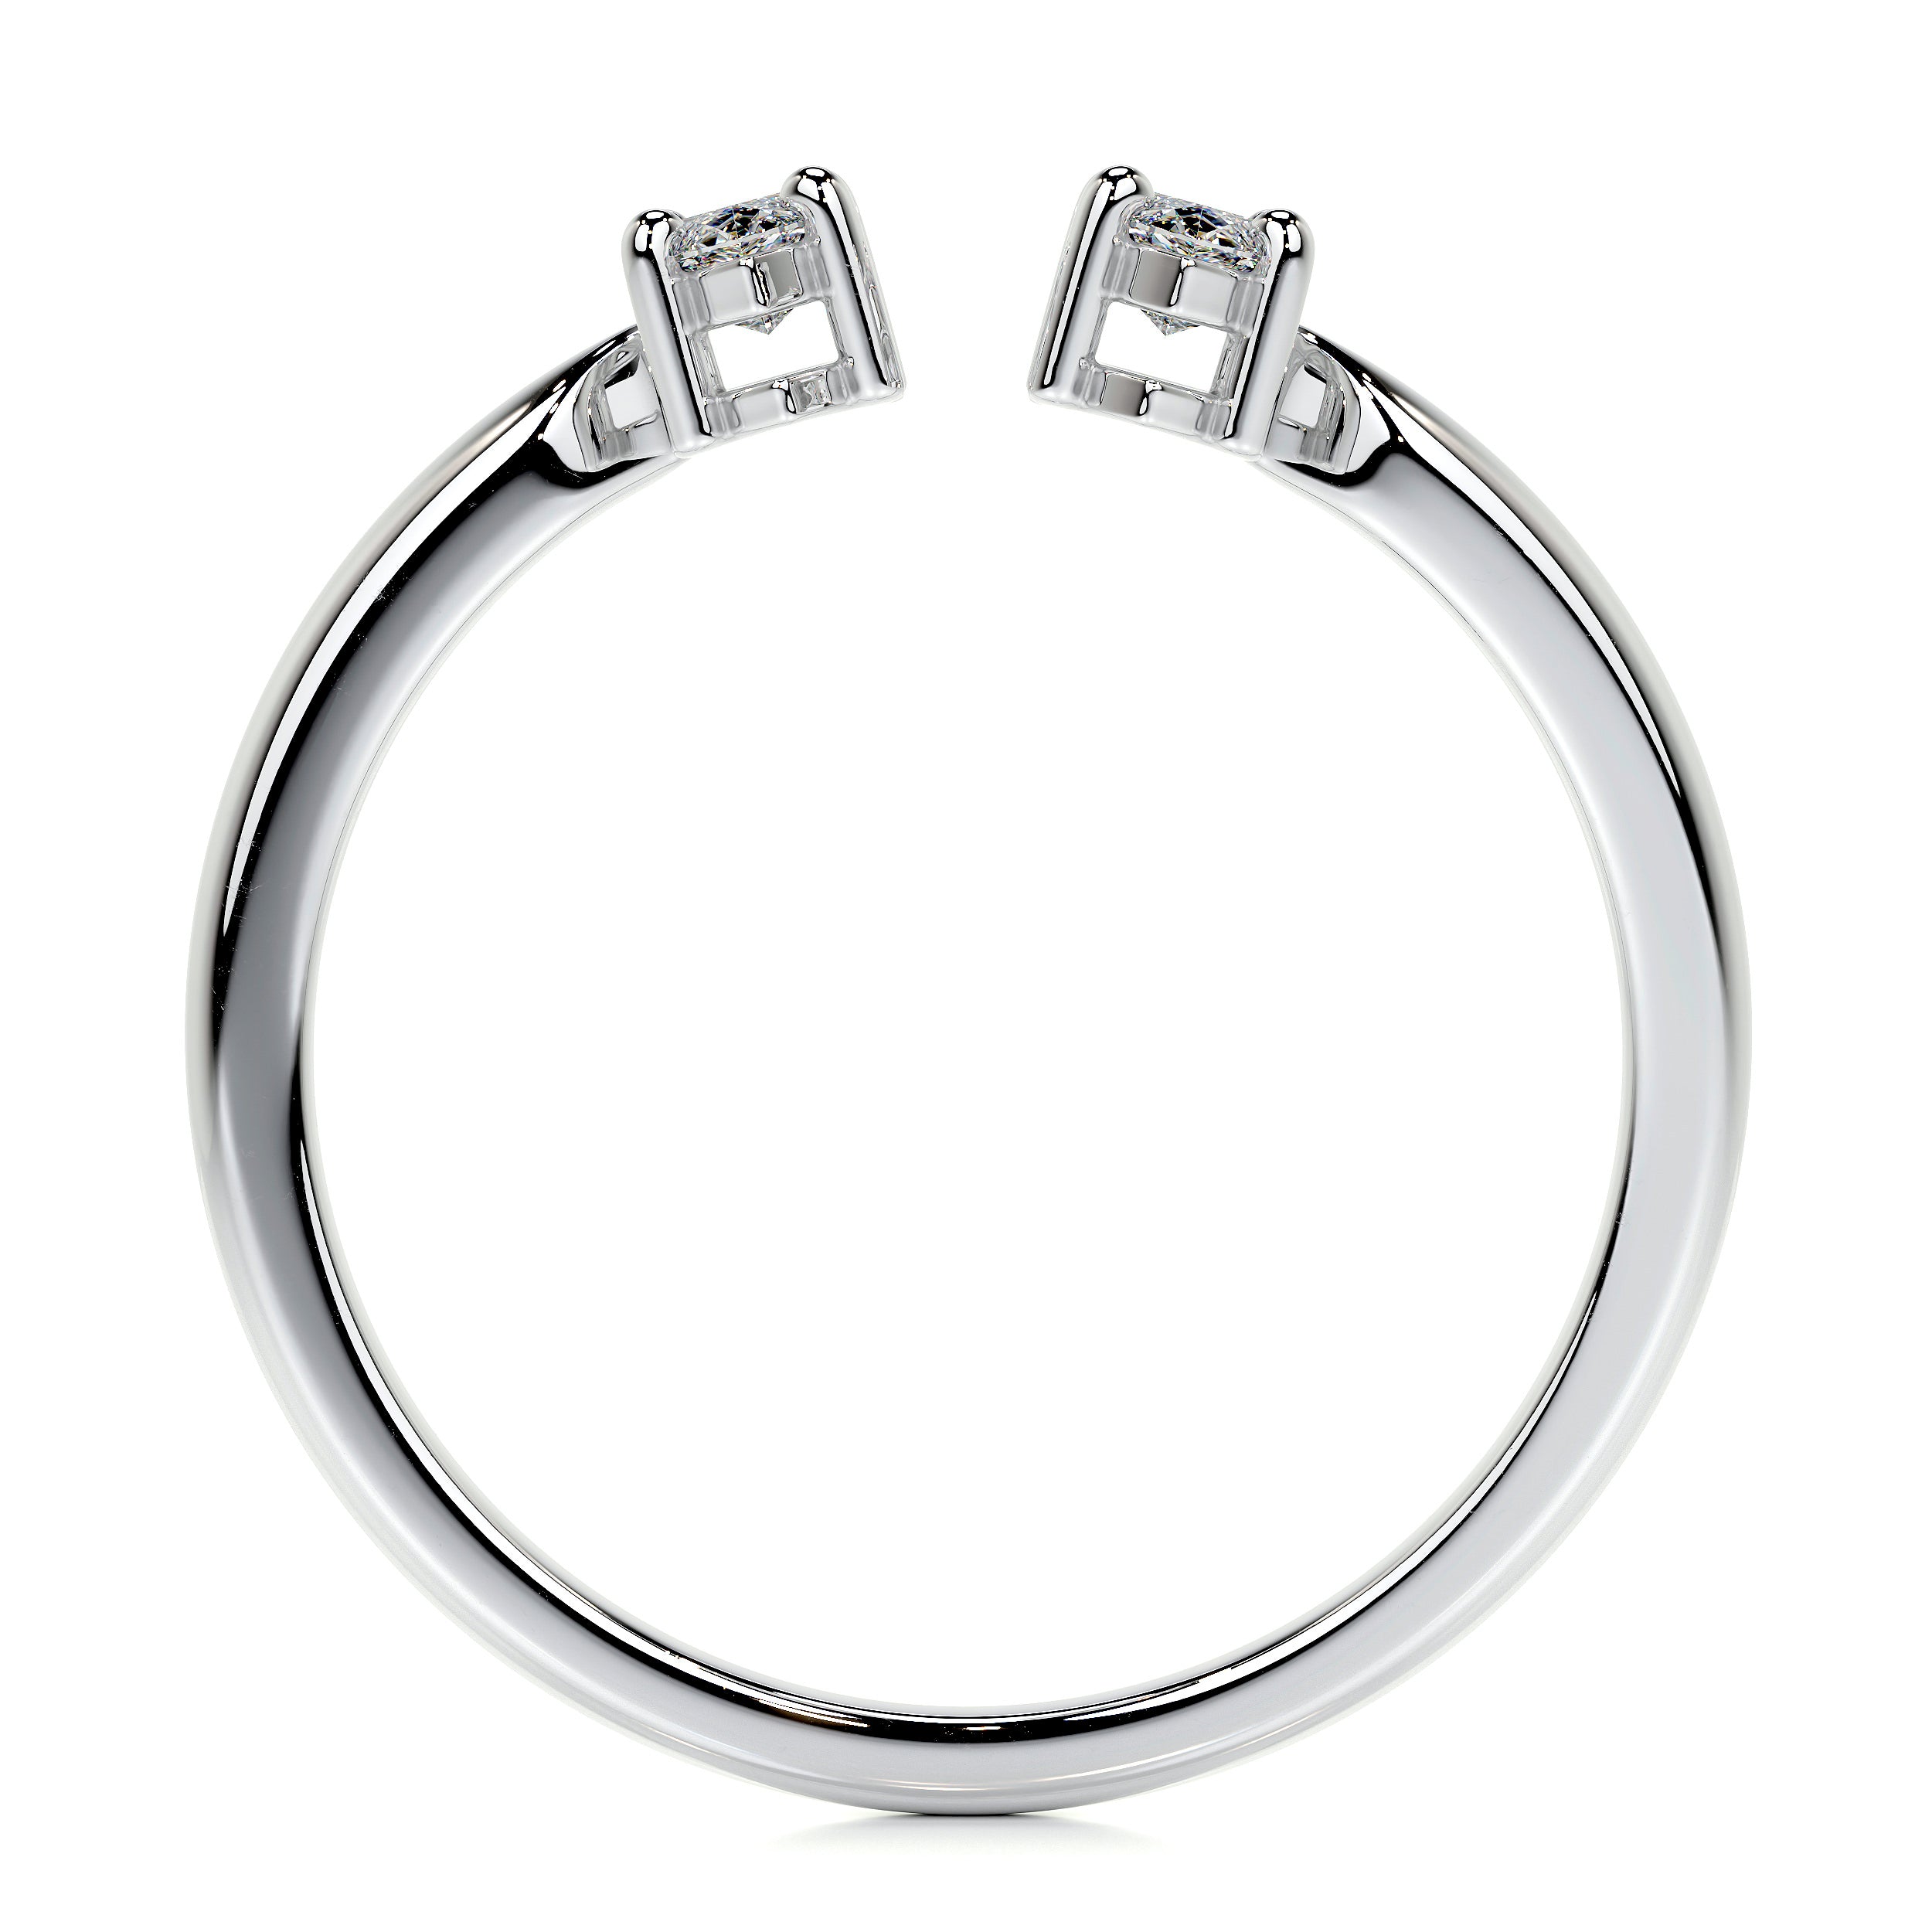 Celine Lab Grown Fashion Ring   (0.36 Carat) -Platinum